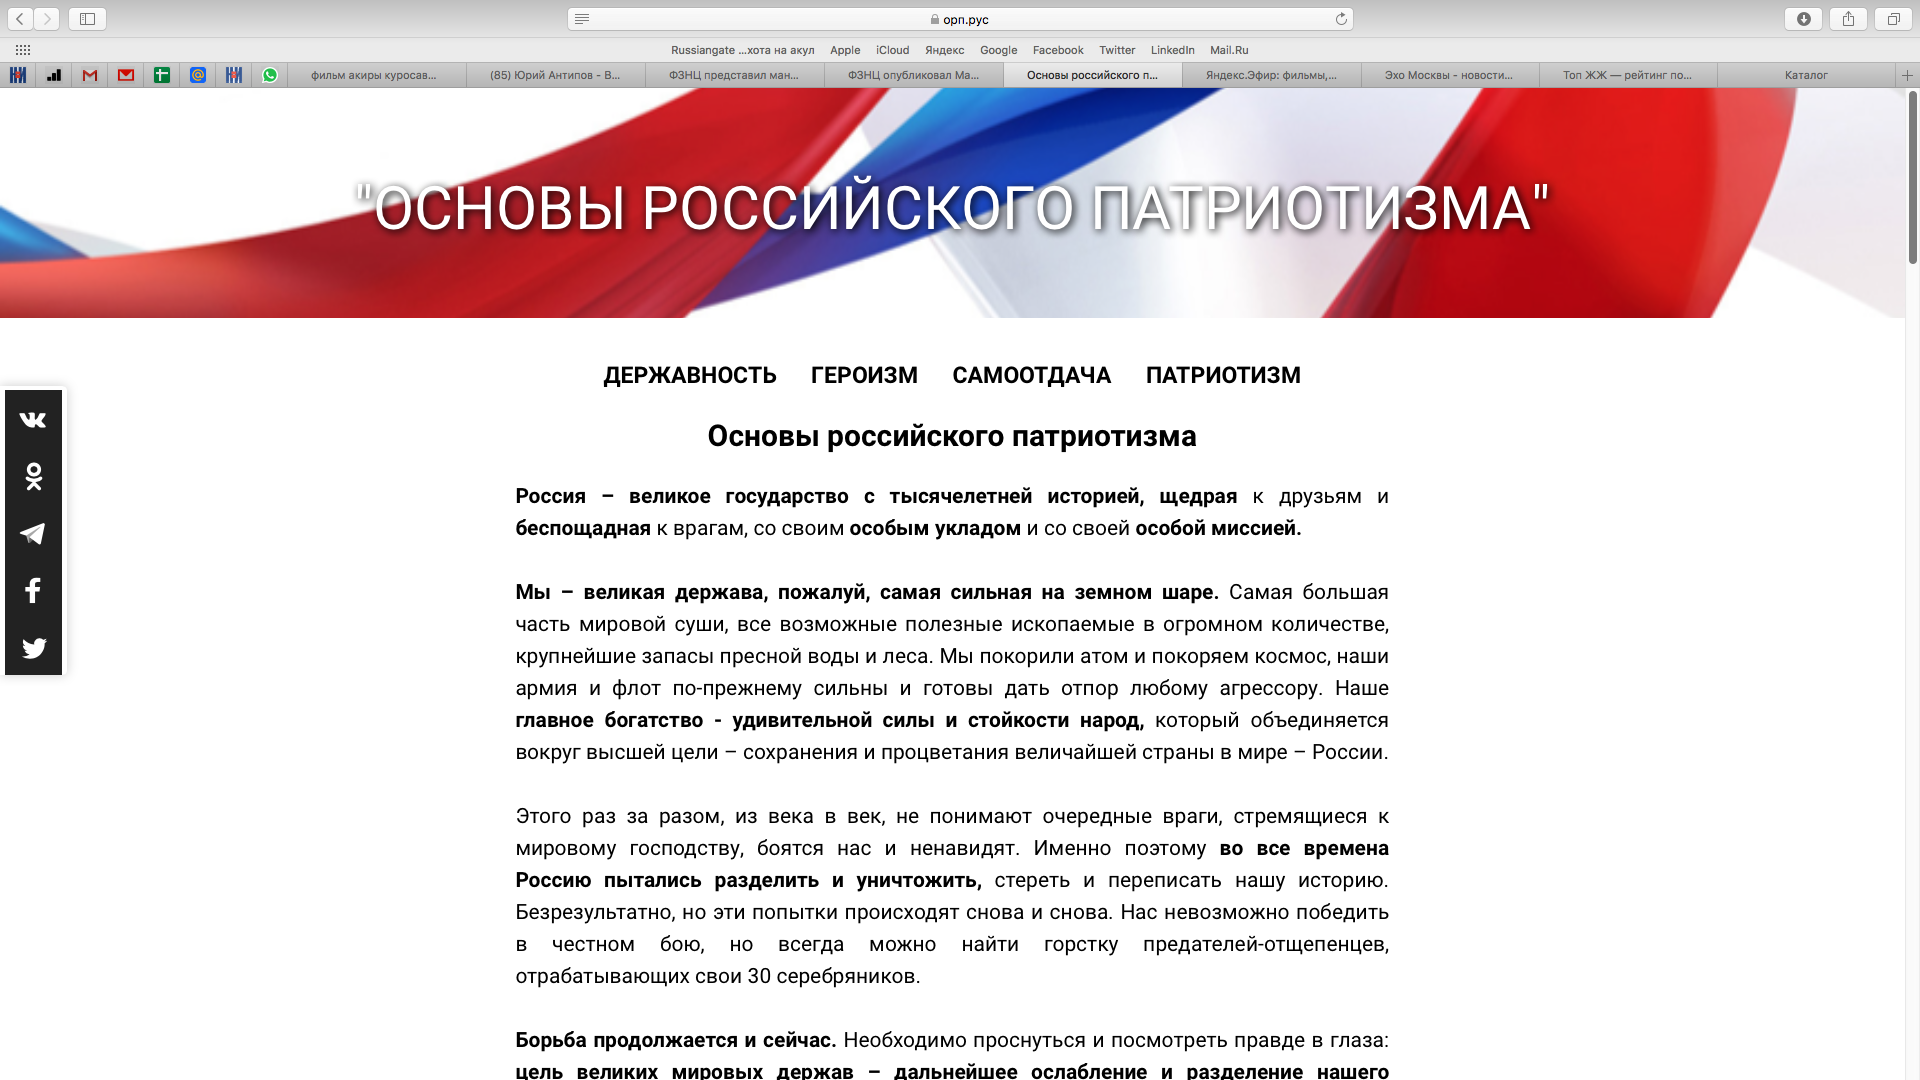 ФЗНЦ представил манифест о русском патриотизме и национальной идее России